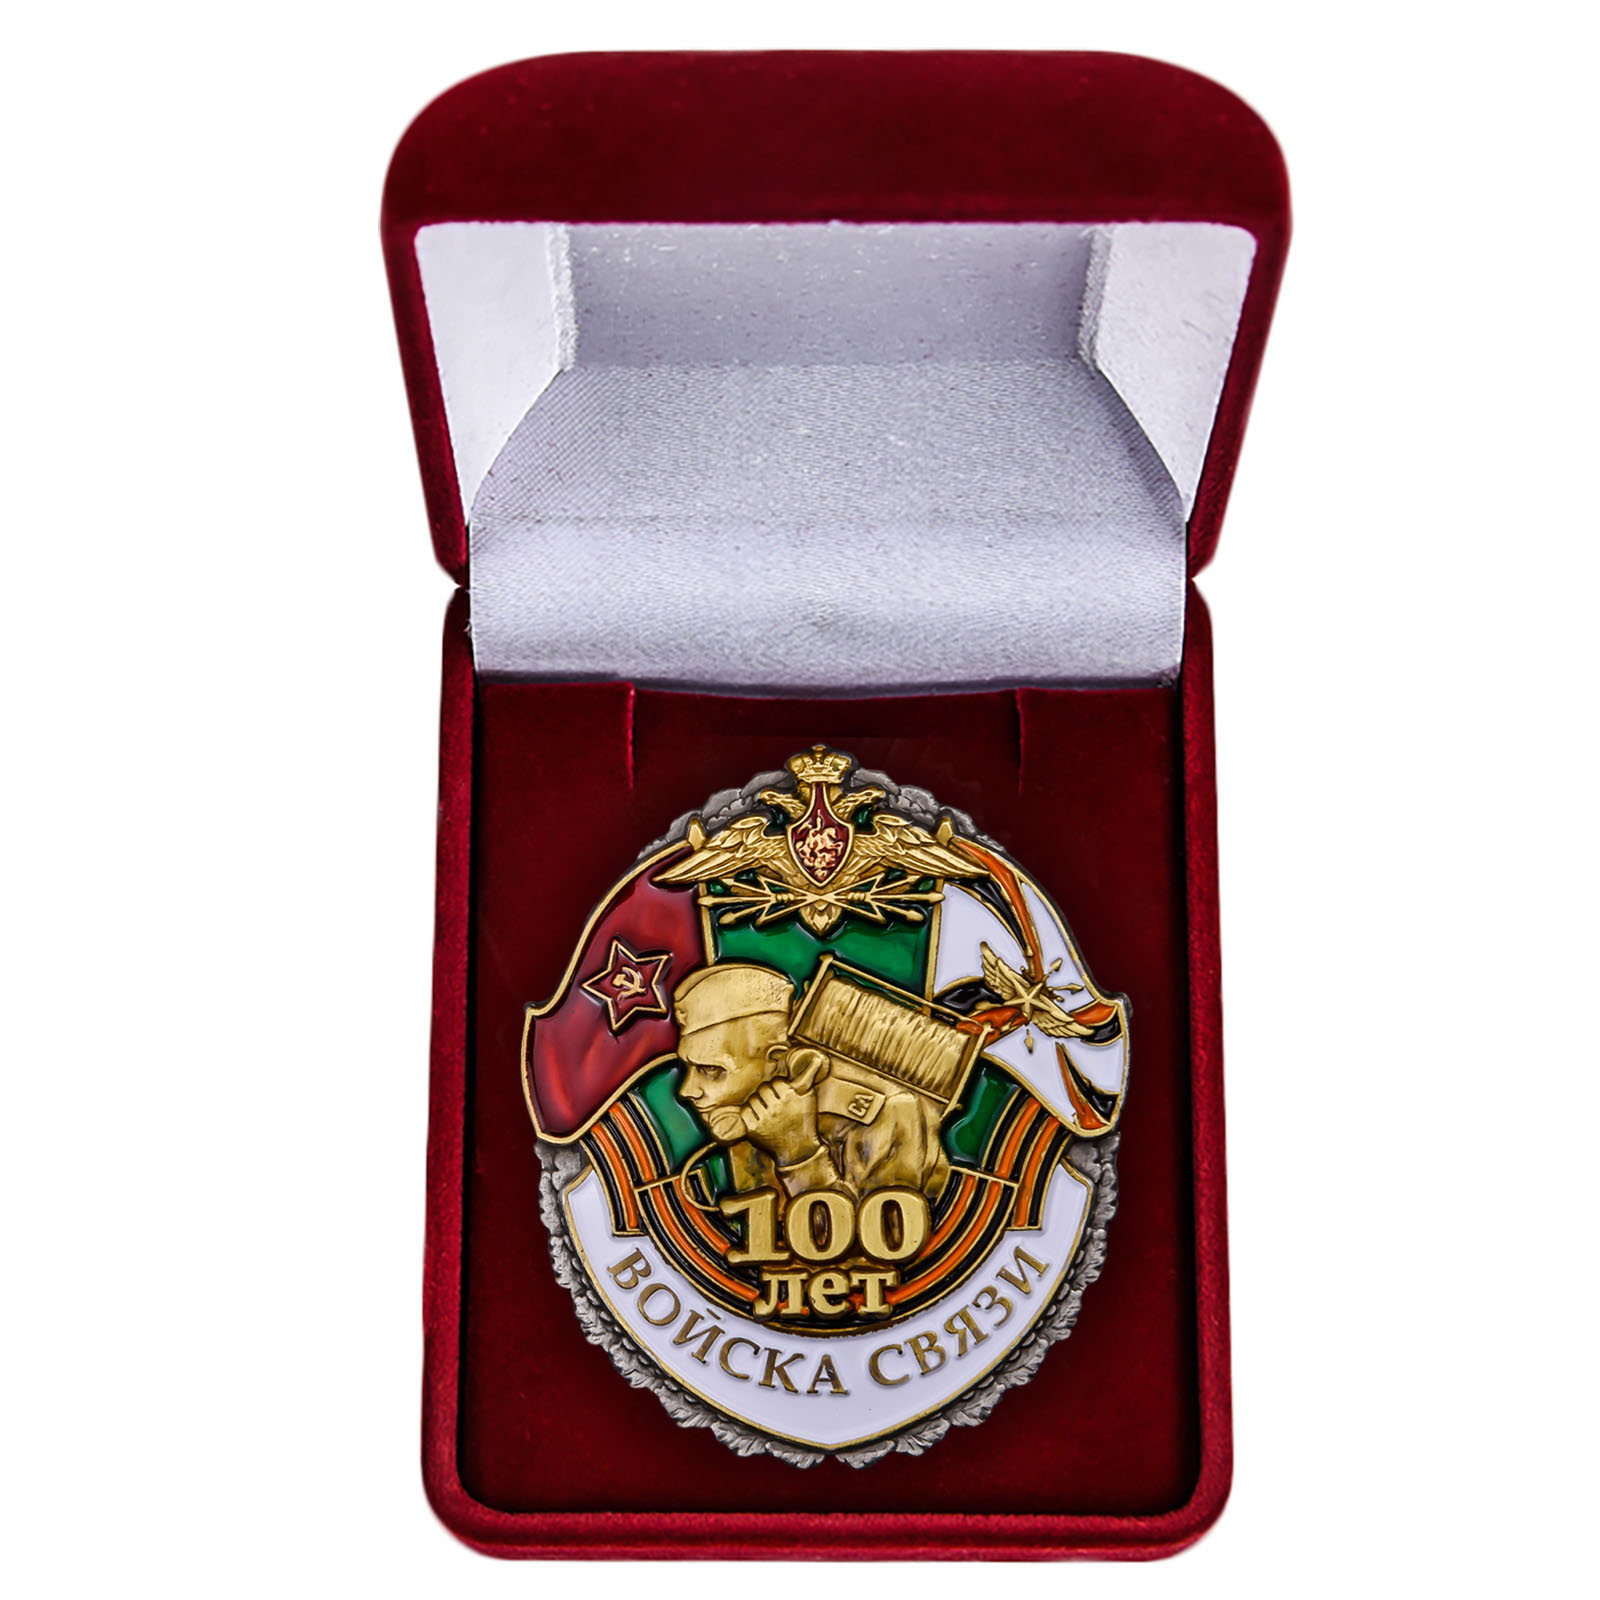 Памятный знак "100 лет Войскам связи" 